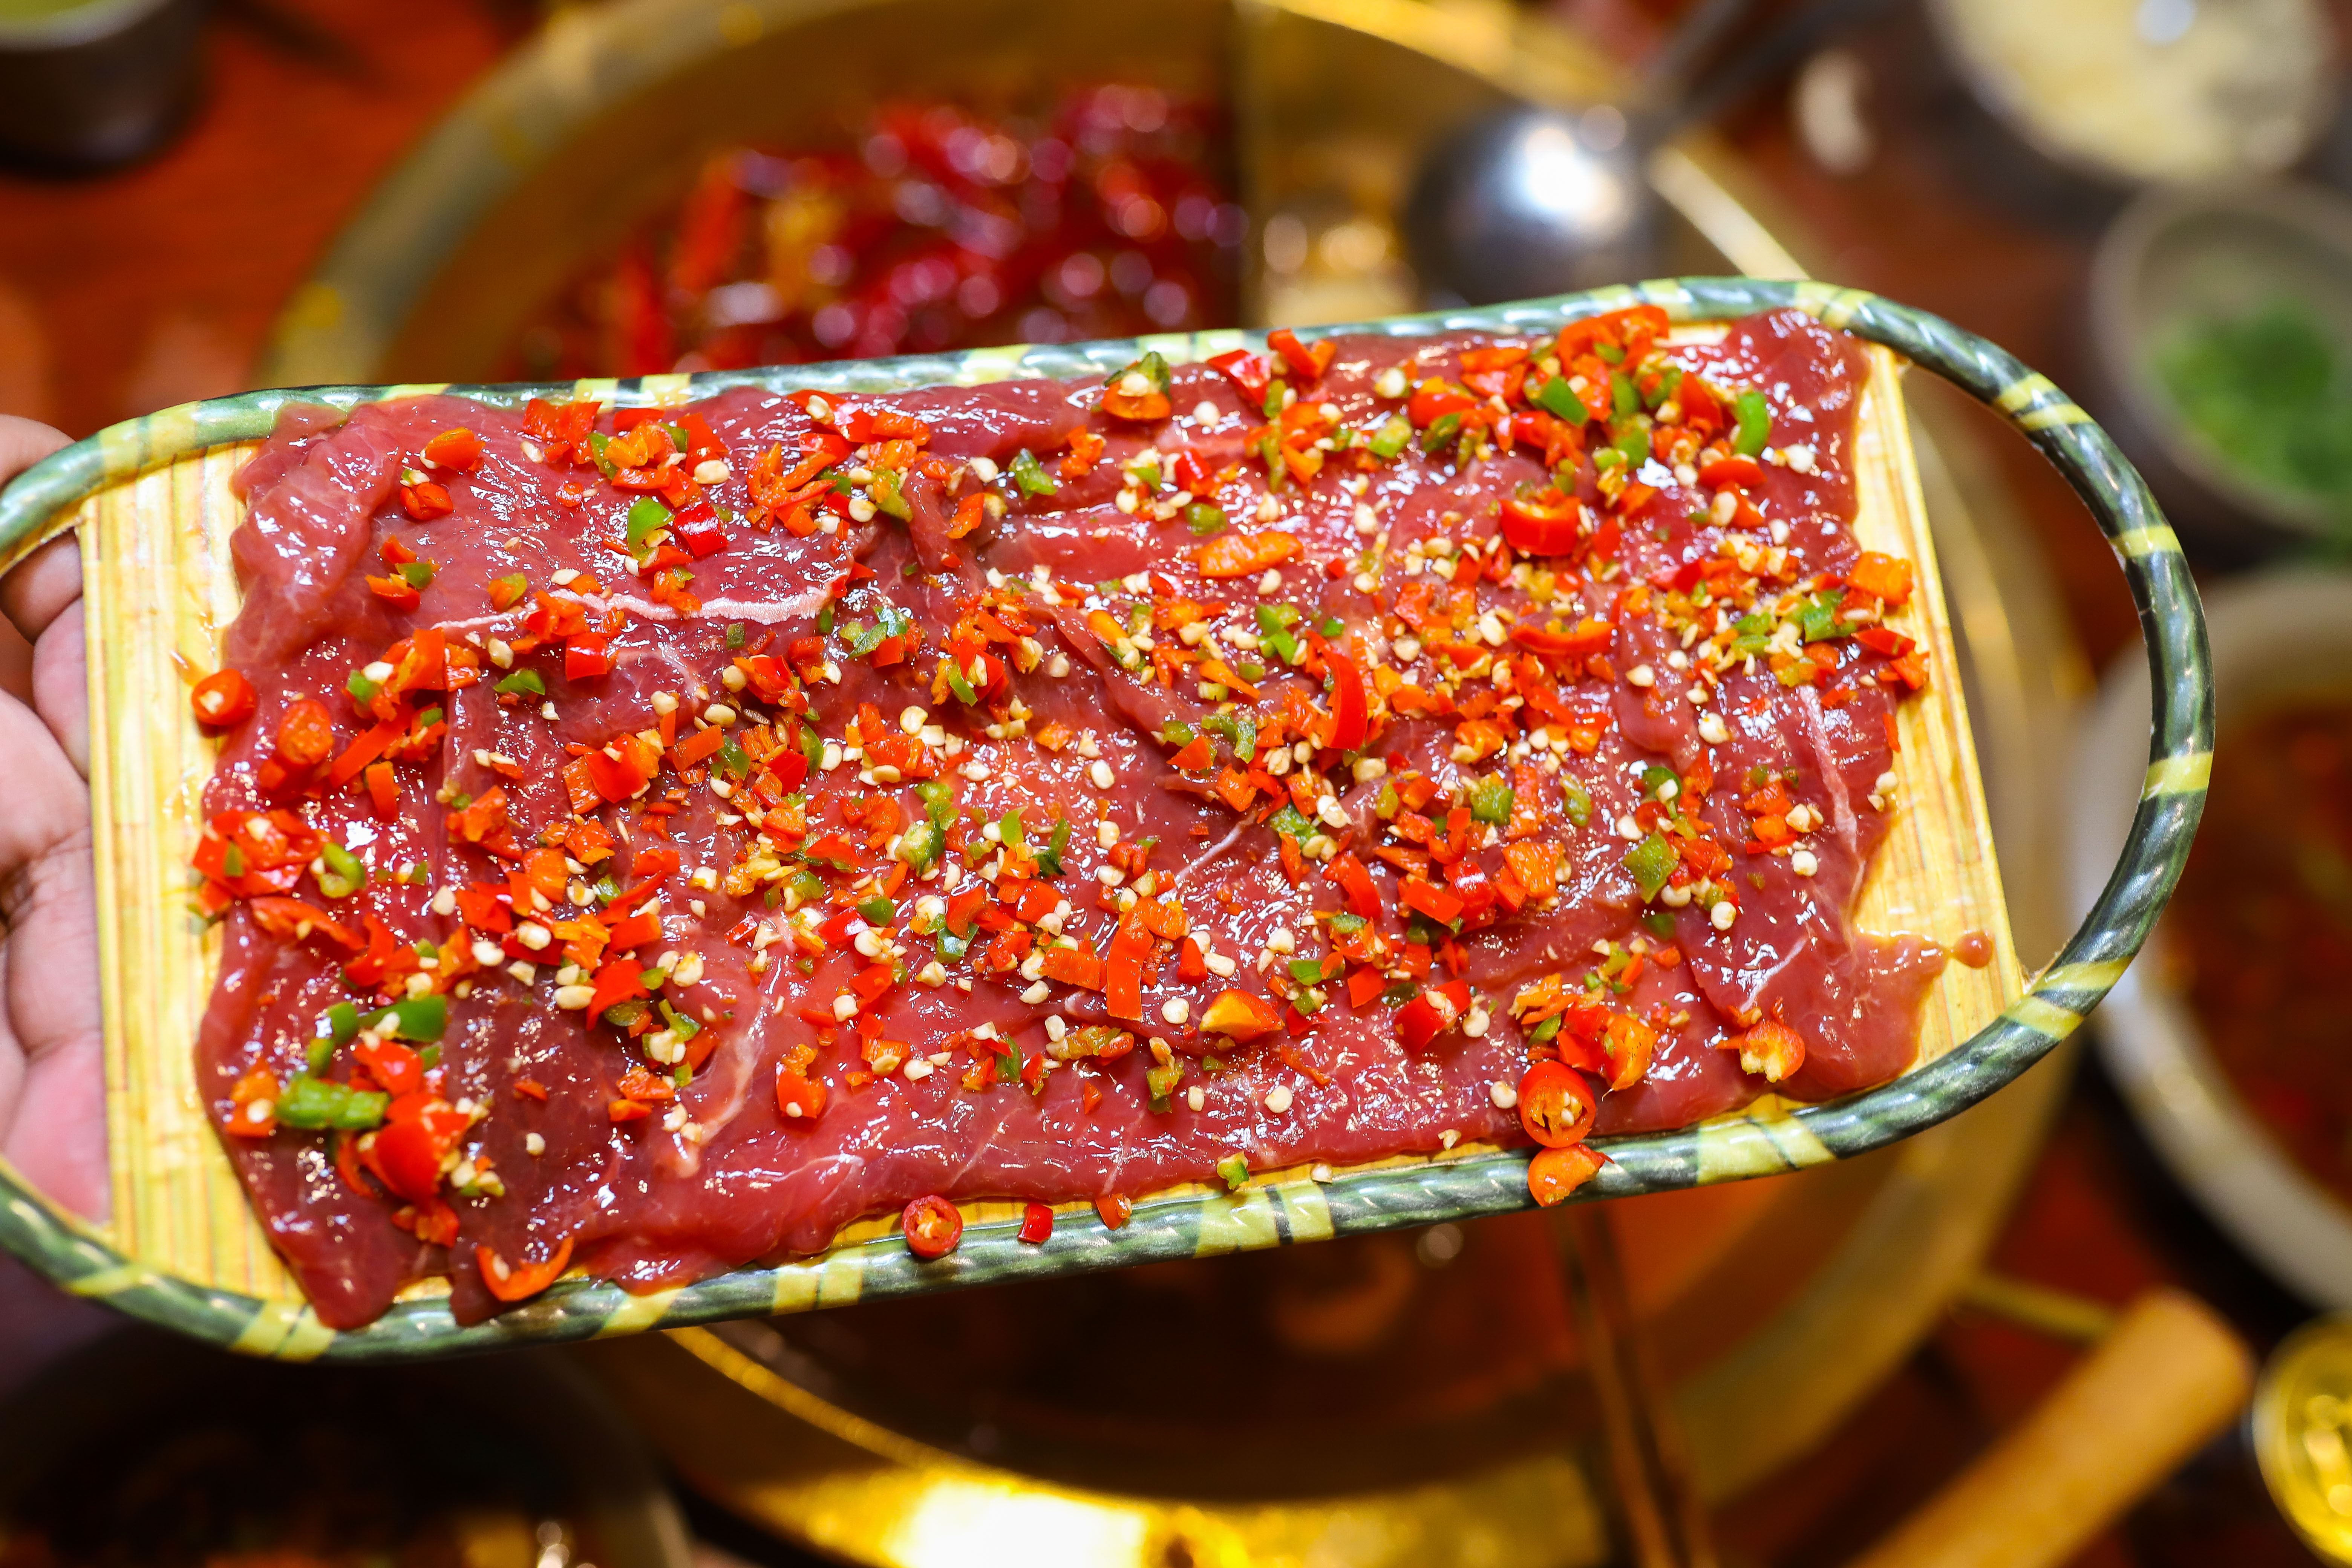 双椒霸王牛肉,混合了红,青两种辣椒搭配,牛肉吃起来很有肉味